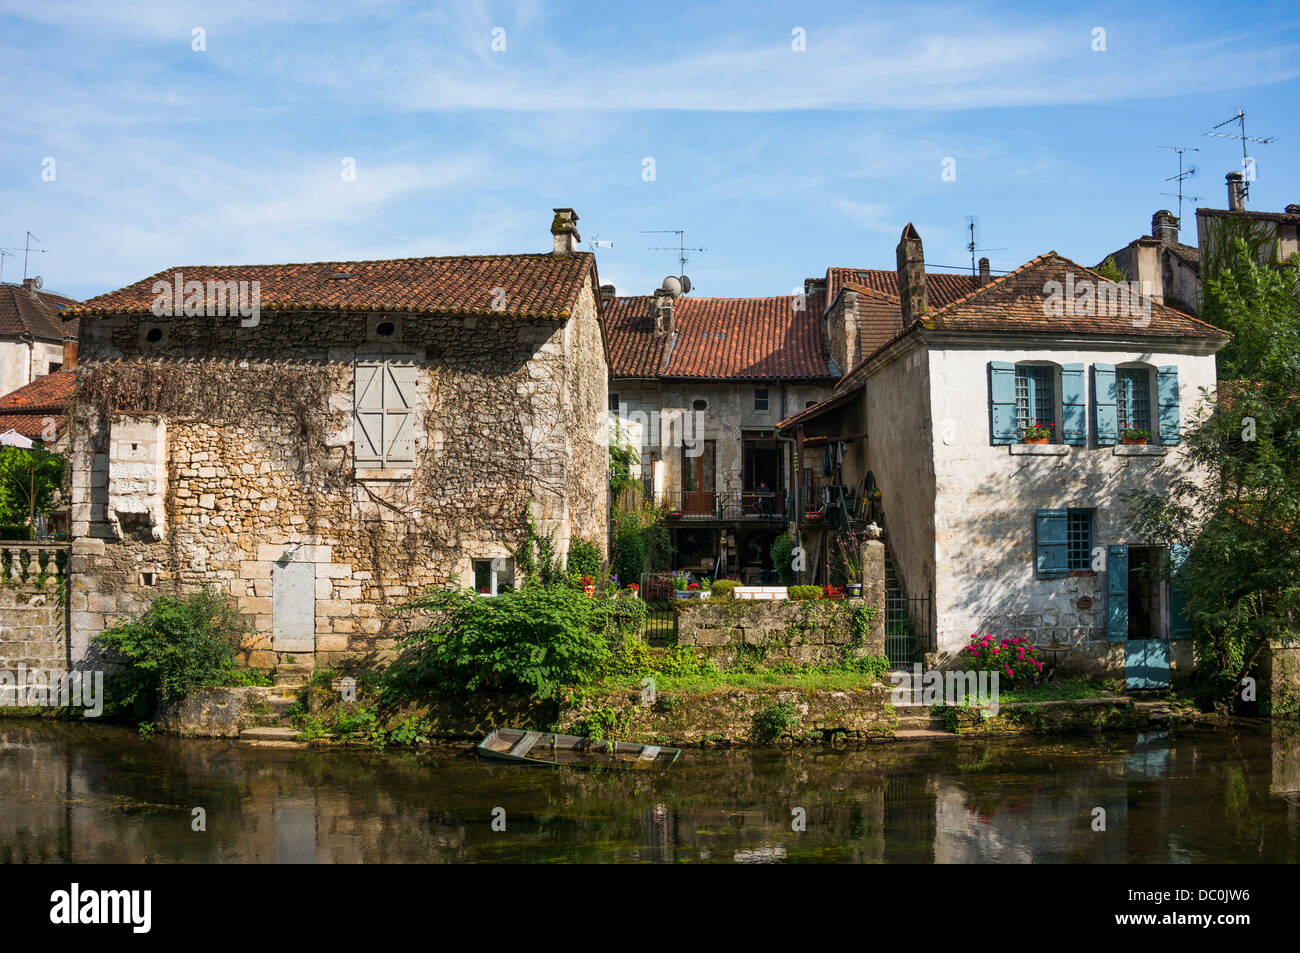 Iluminada por el sol, antiguas casas cerradas con vistas al río Dronne en la comuna de Brantôme, en el departamento de Dordoña, en el suroeste de Francia, Europa. Foto de stock